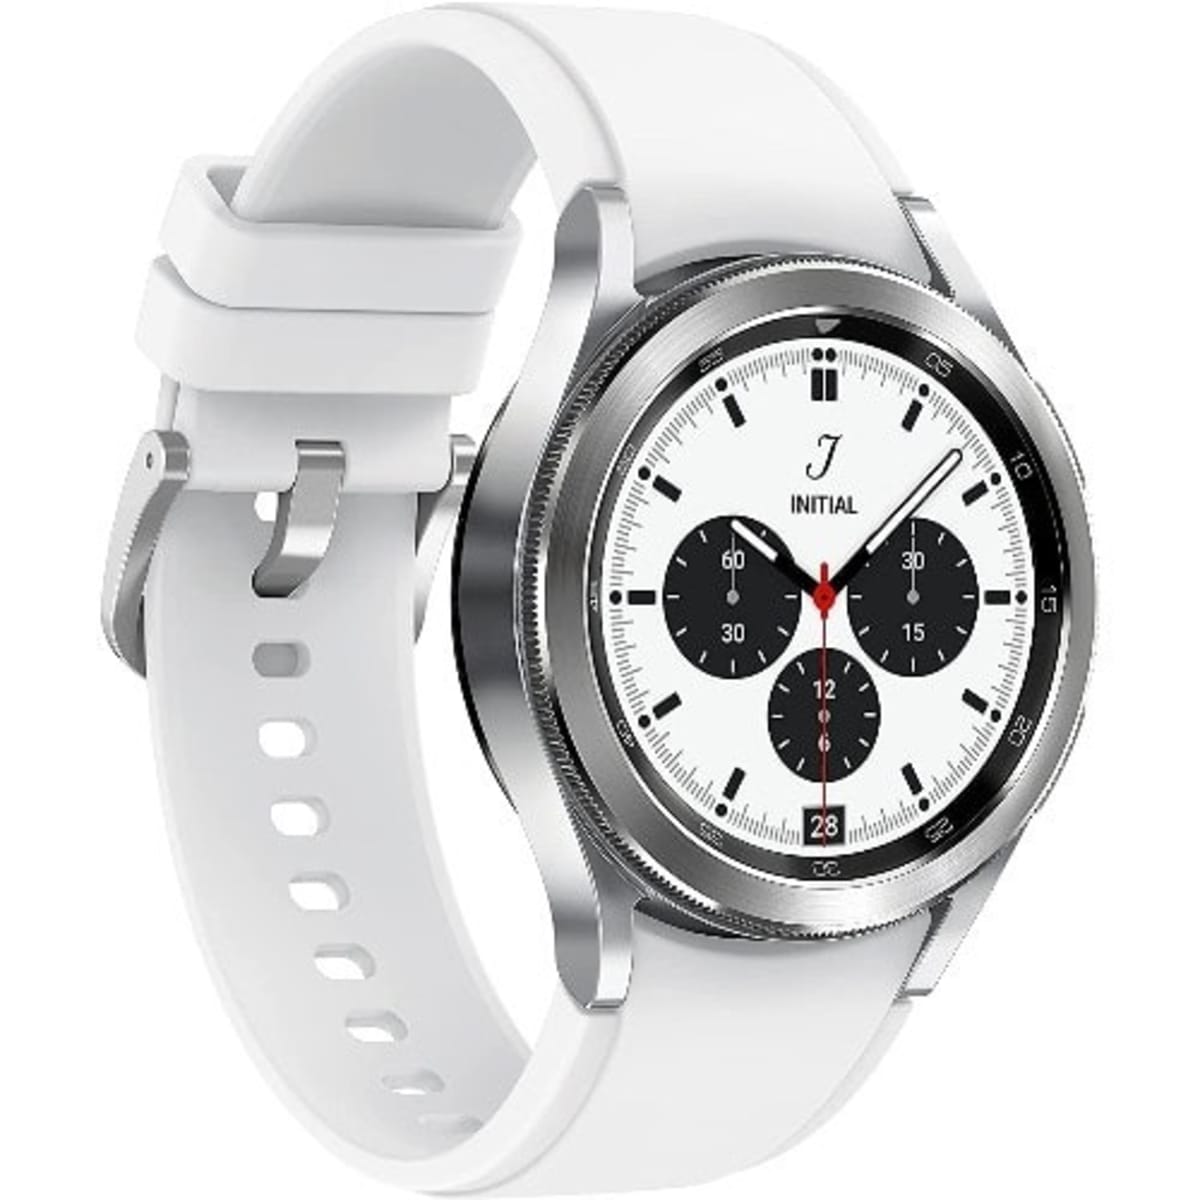 Samsung Galaxy Watch (Silver, 46mm, Bluetooth)